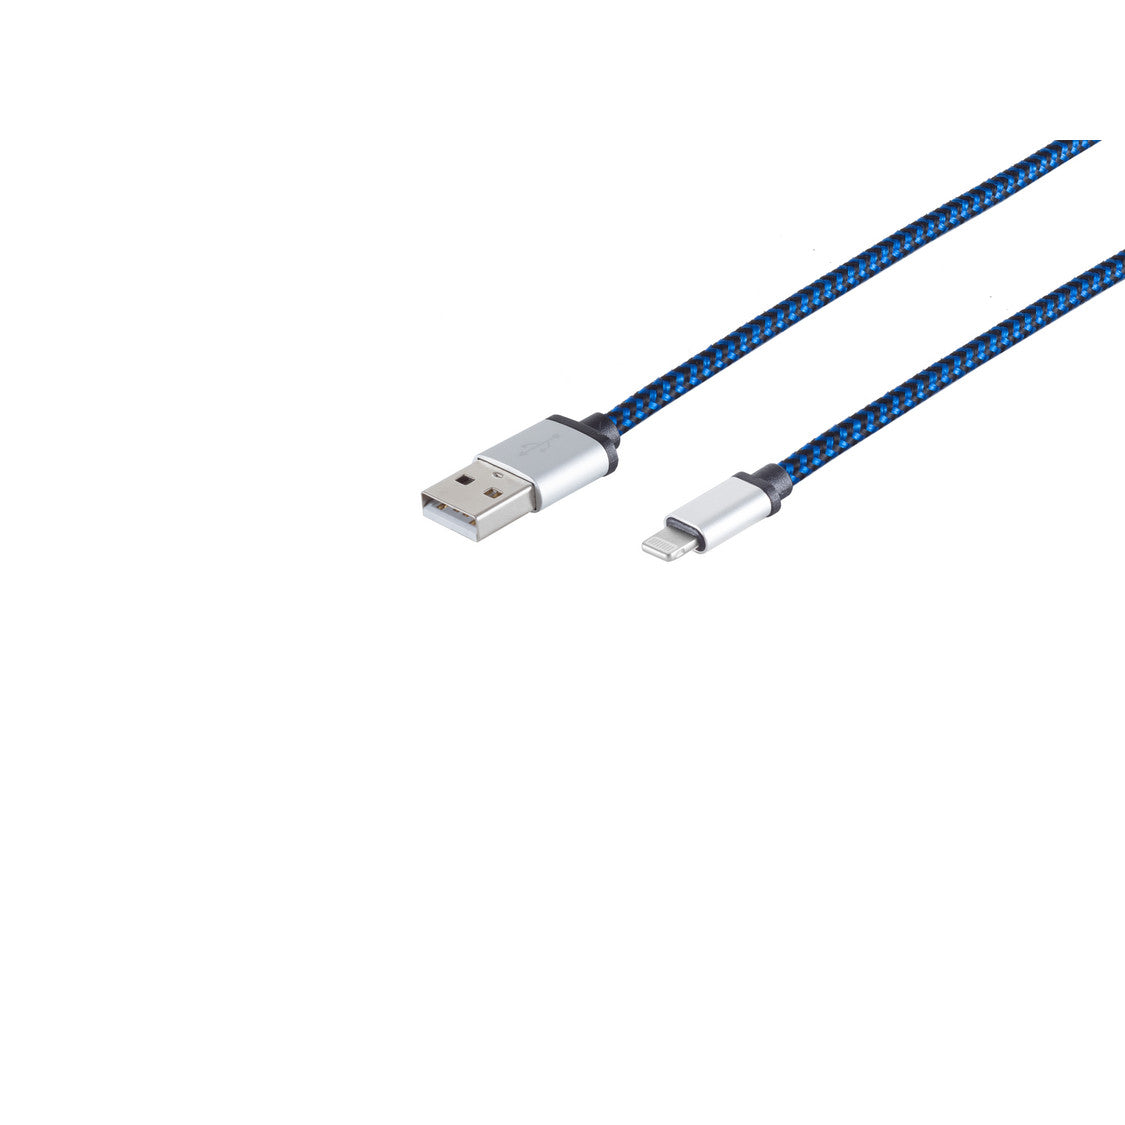 8-Pin Ladekabel, USB-A-Stecker auf 8-pin Stecker, Nylon